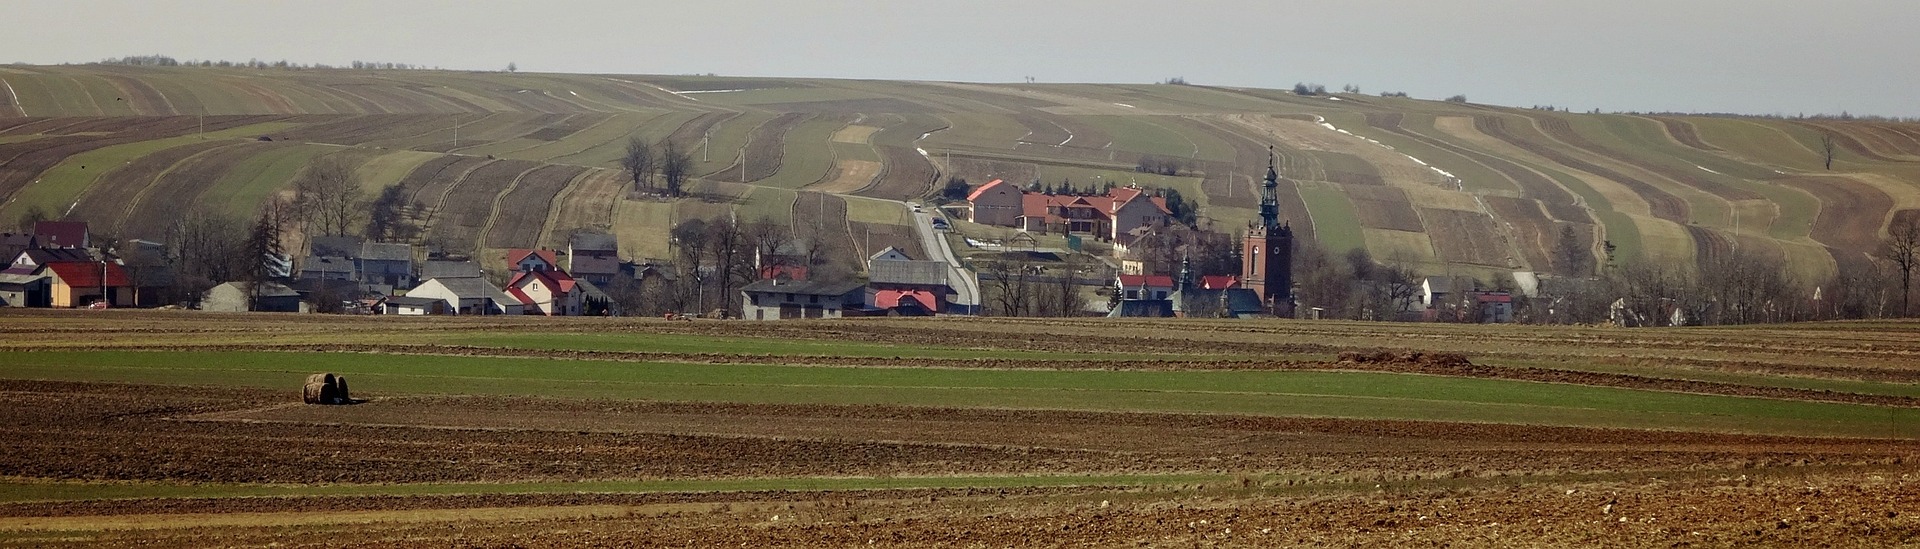 polska wieś krajobraz pole